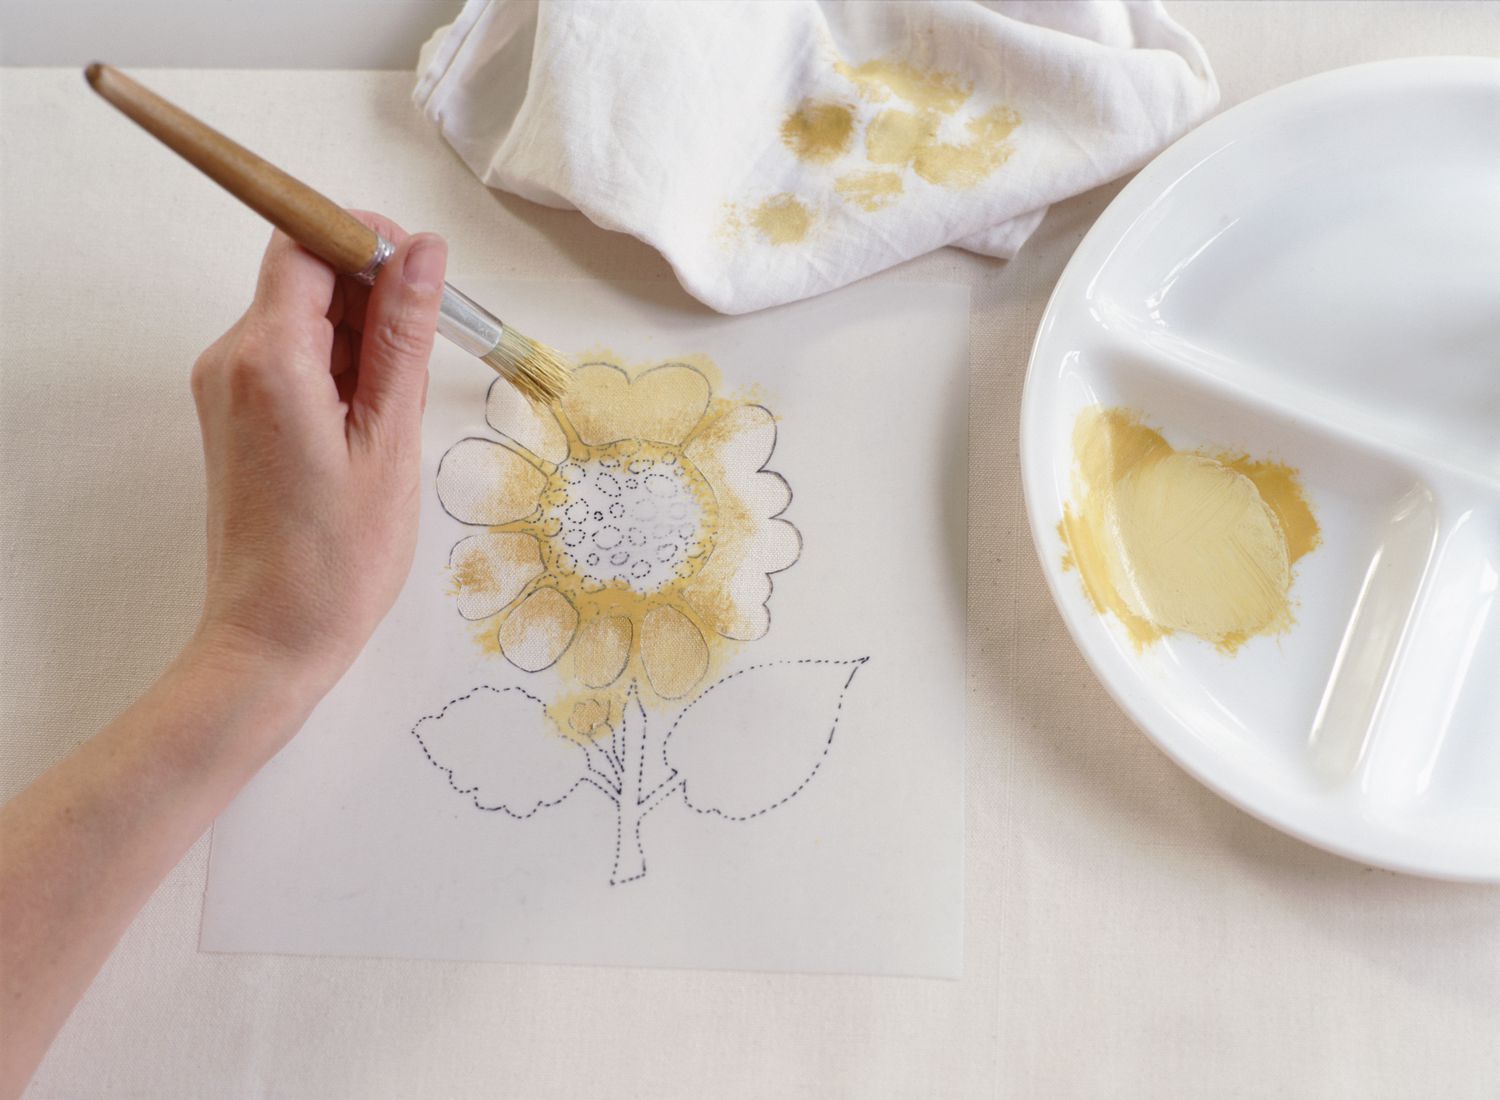 手印迹淡黄色油漆到向日葵的花瓣模板,画下面白色织物,使用wooden-handled油漆刷。